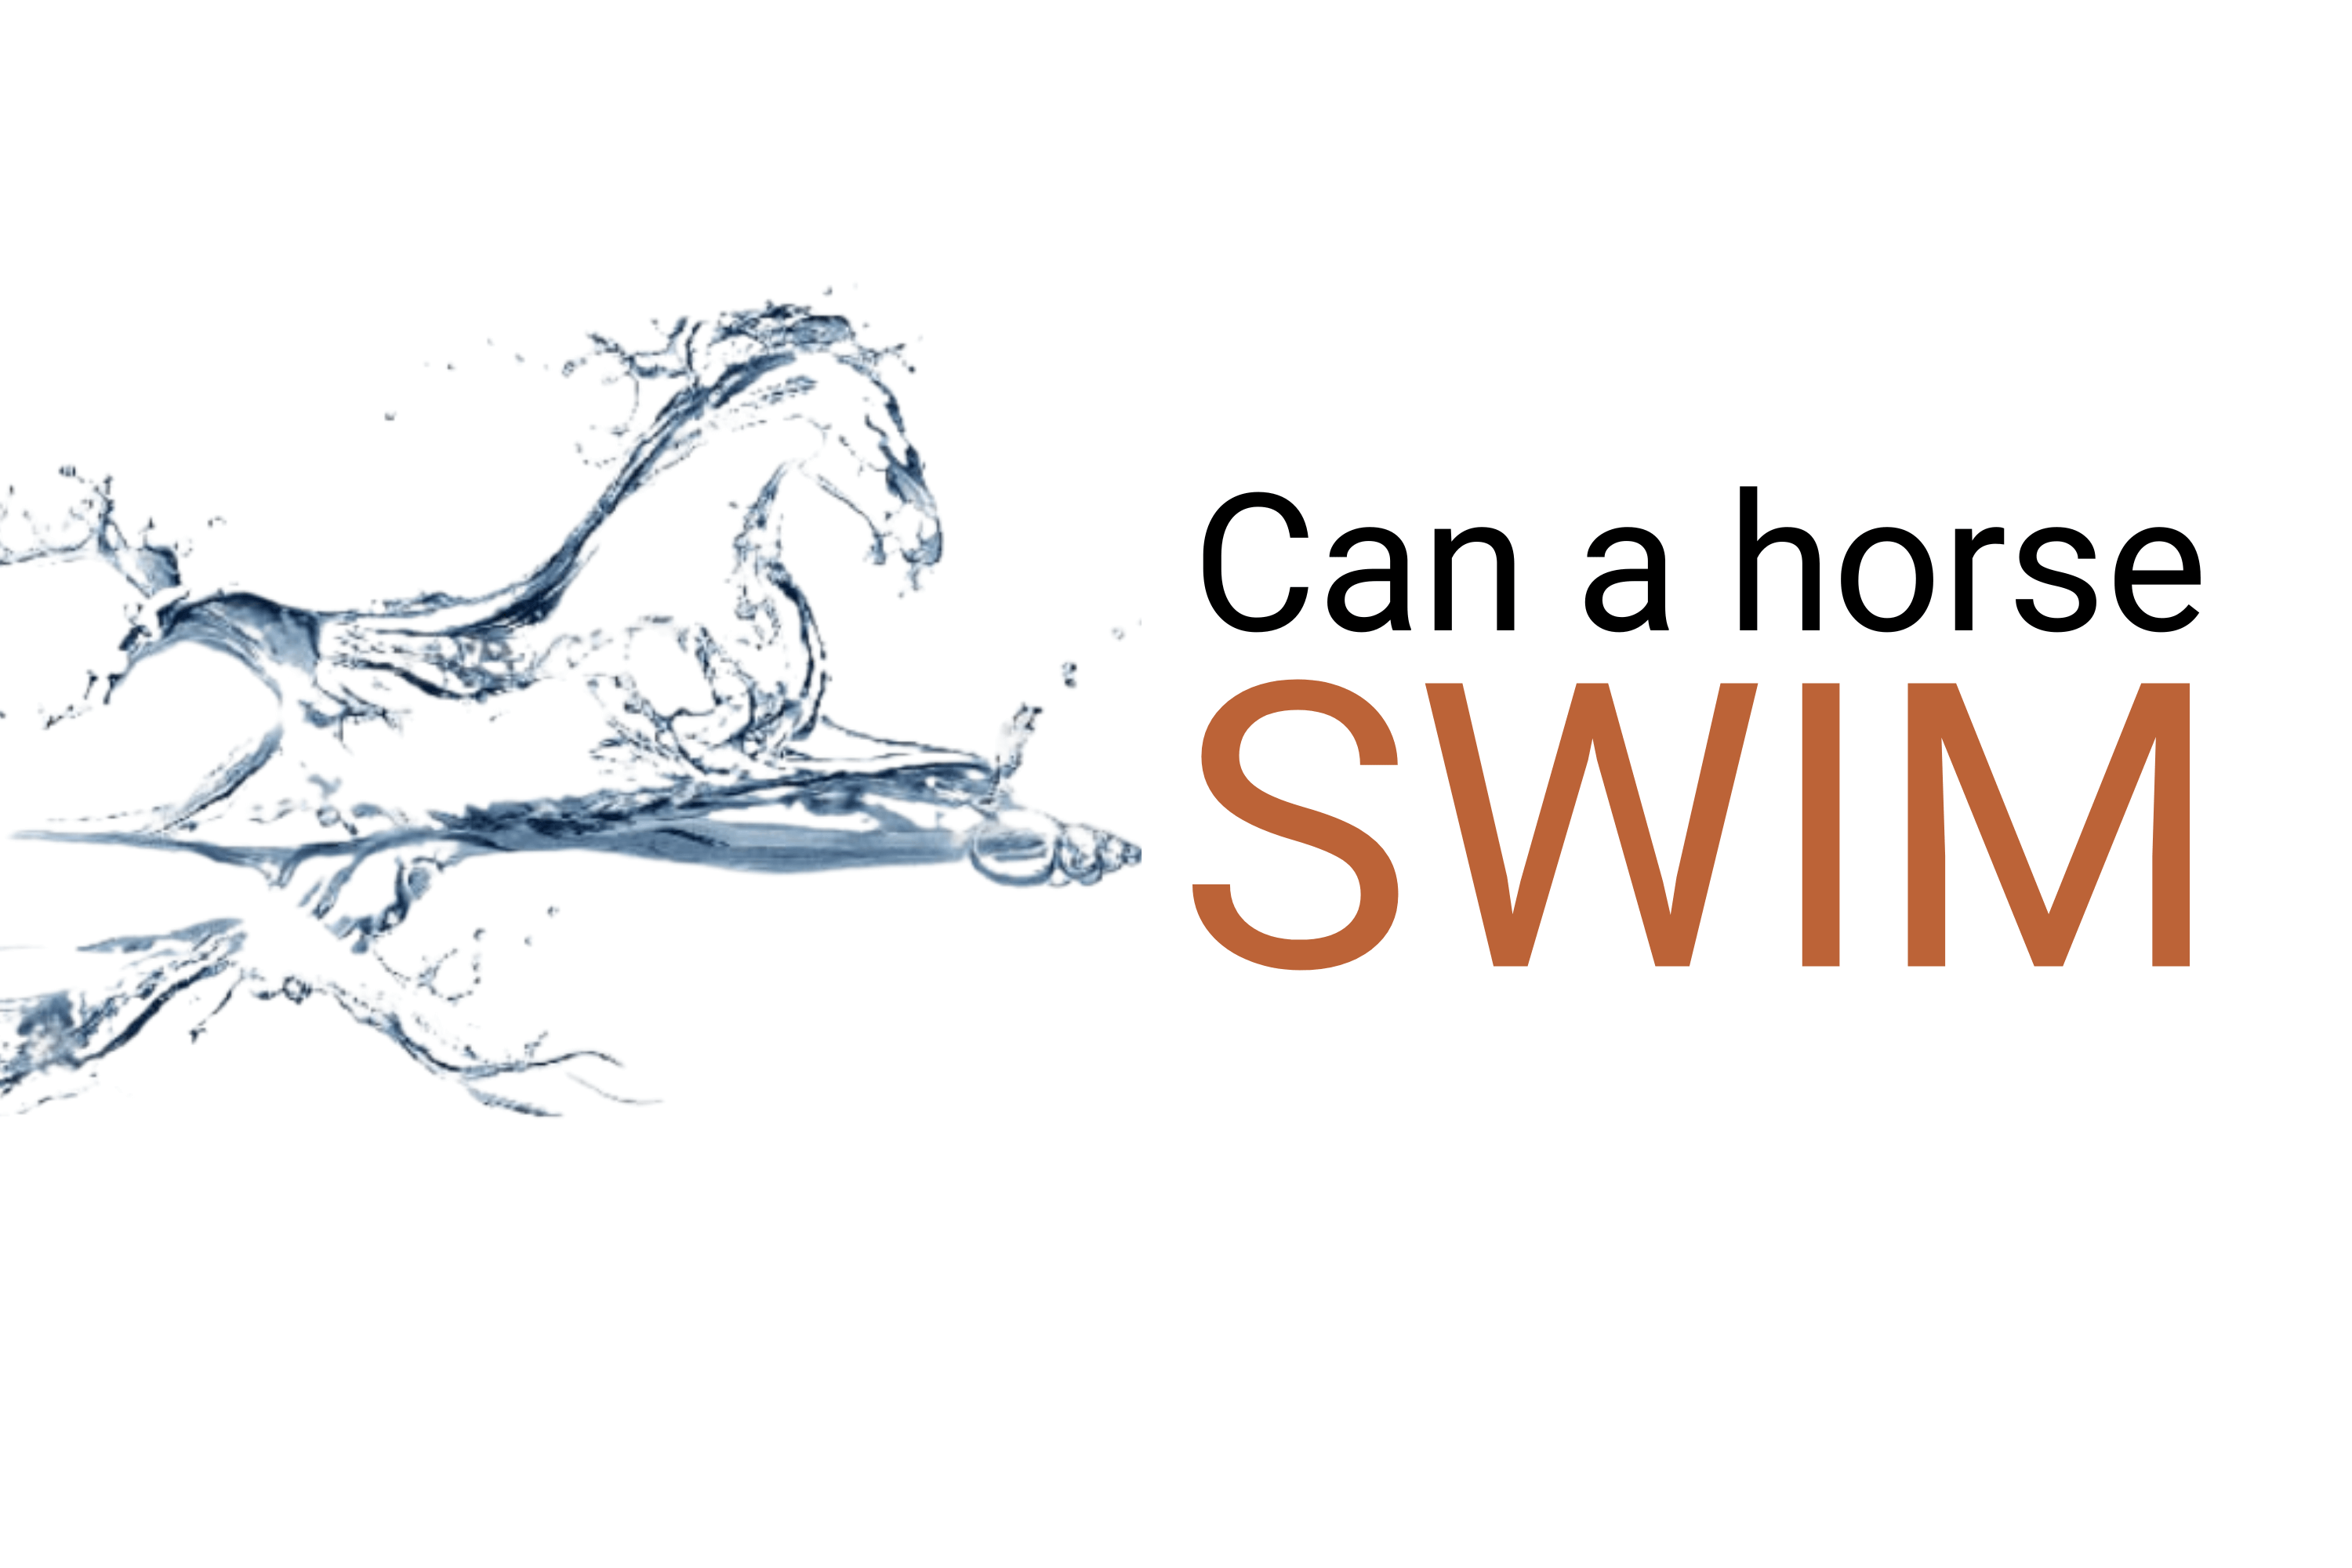 Can horses swim?